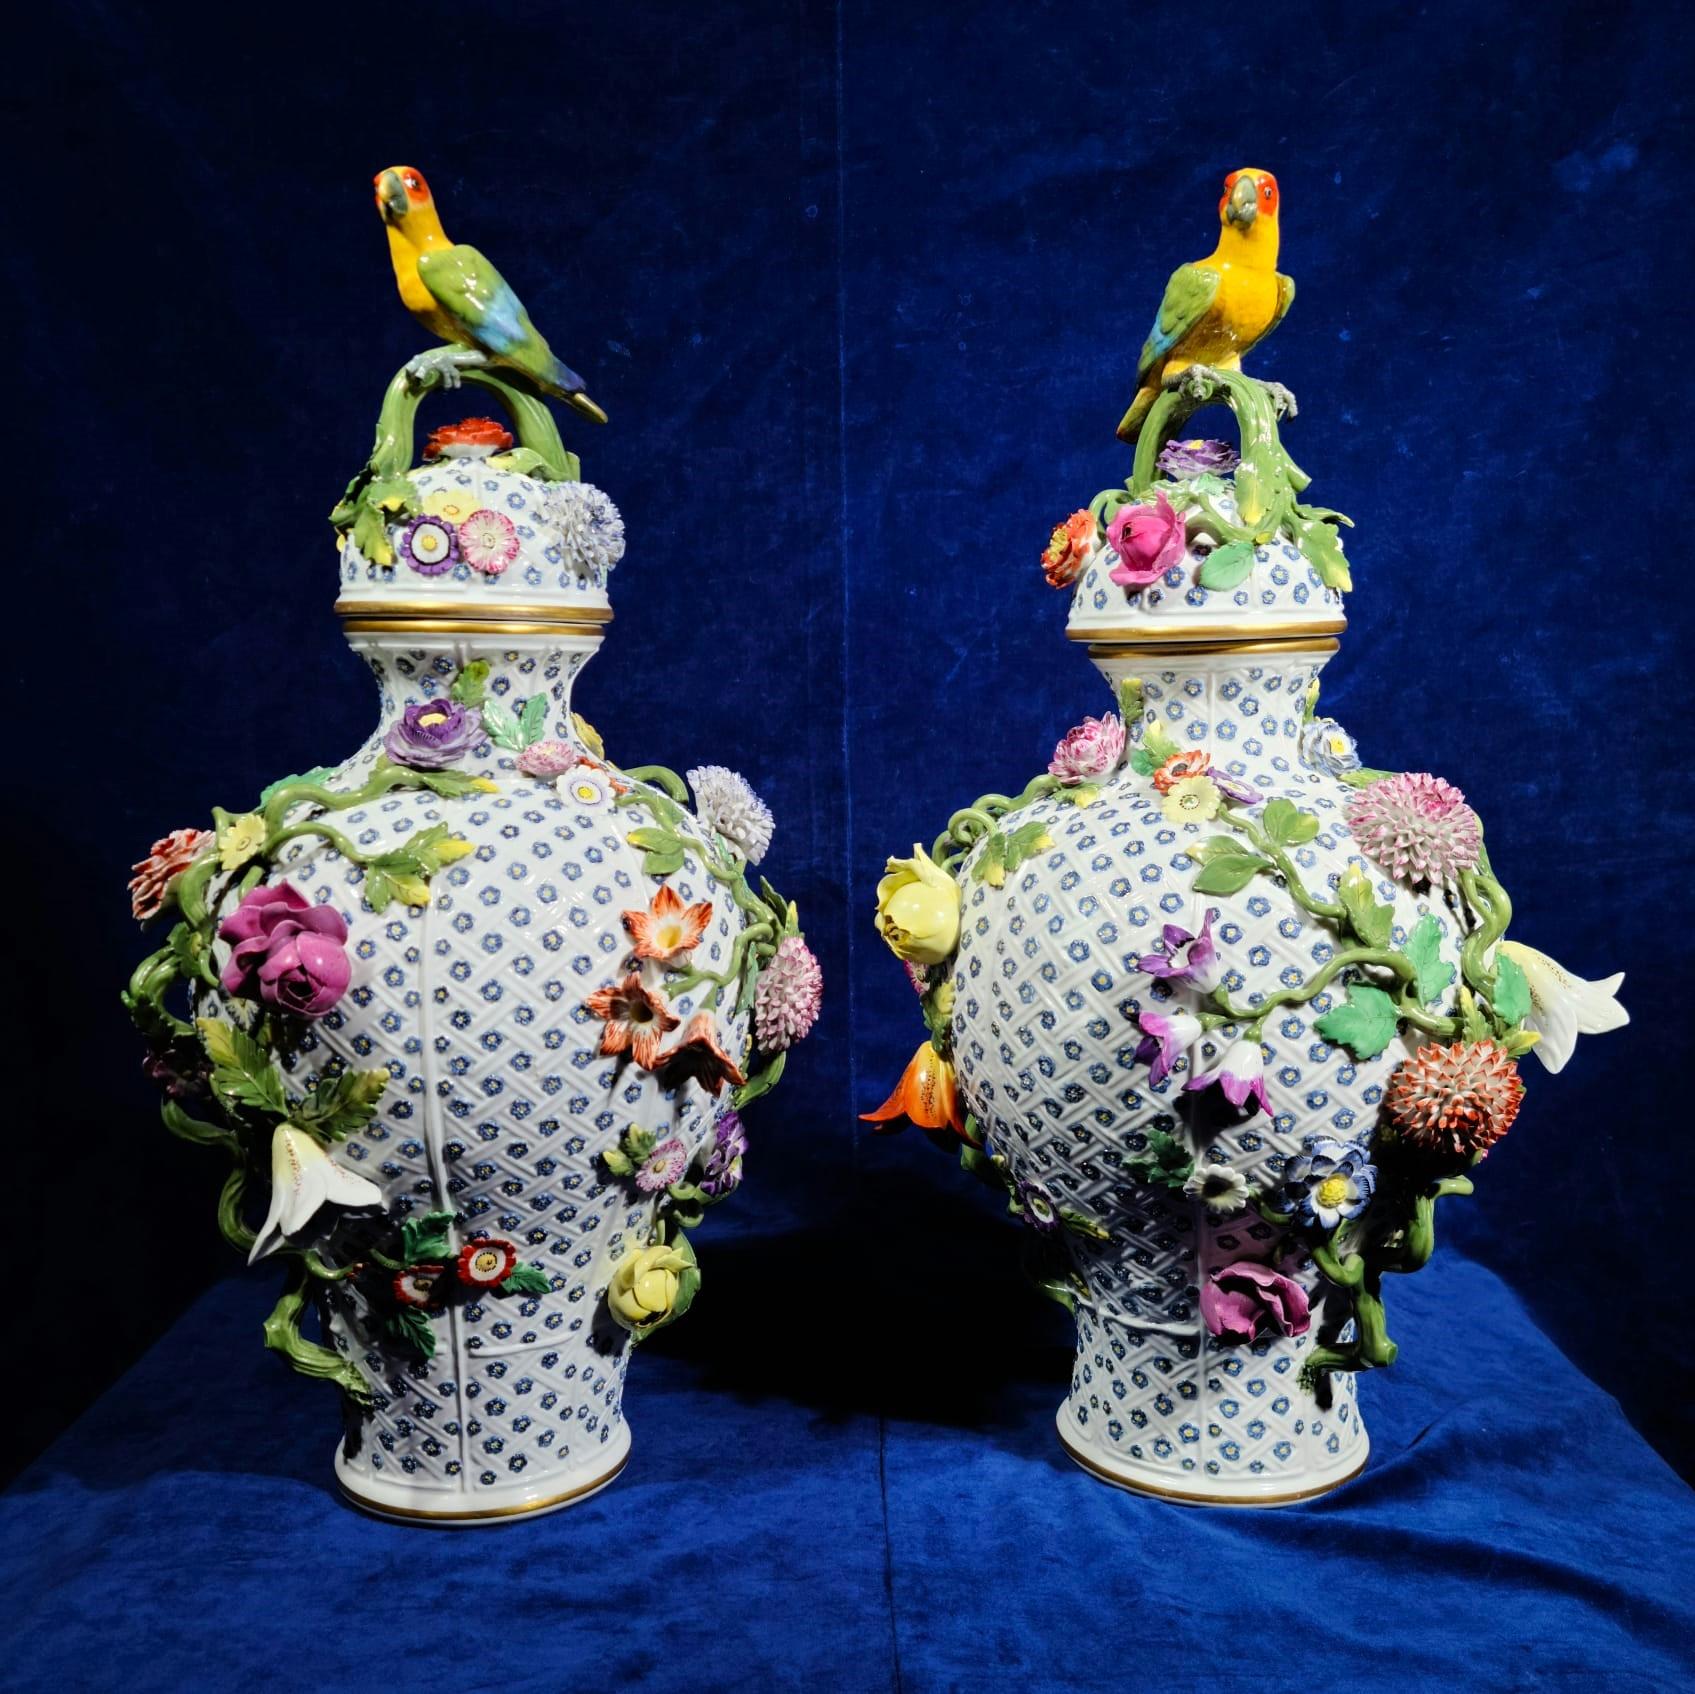 Une incroyable paire de vases à couvercle en porcelaine de Meissen de style Rococo du 19ème siècle, incrustés de perroquets et de fleurs. Chacun d'entre eux est absolument magnifique avec une variété de fleurs, de vignes et de feuilles peintes à la